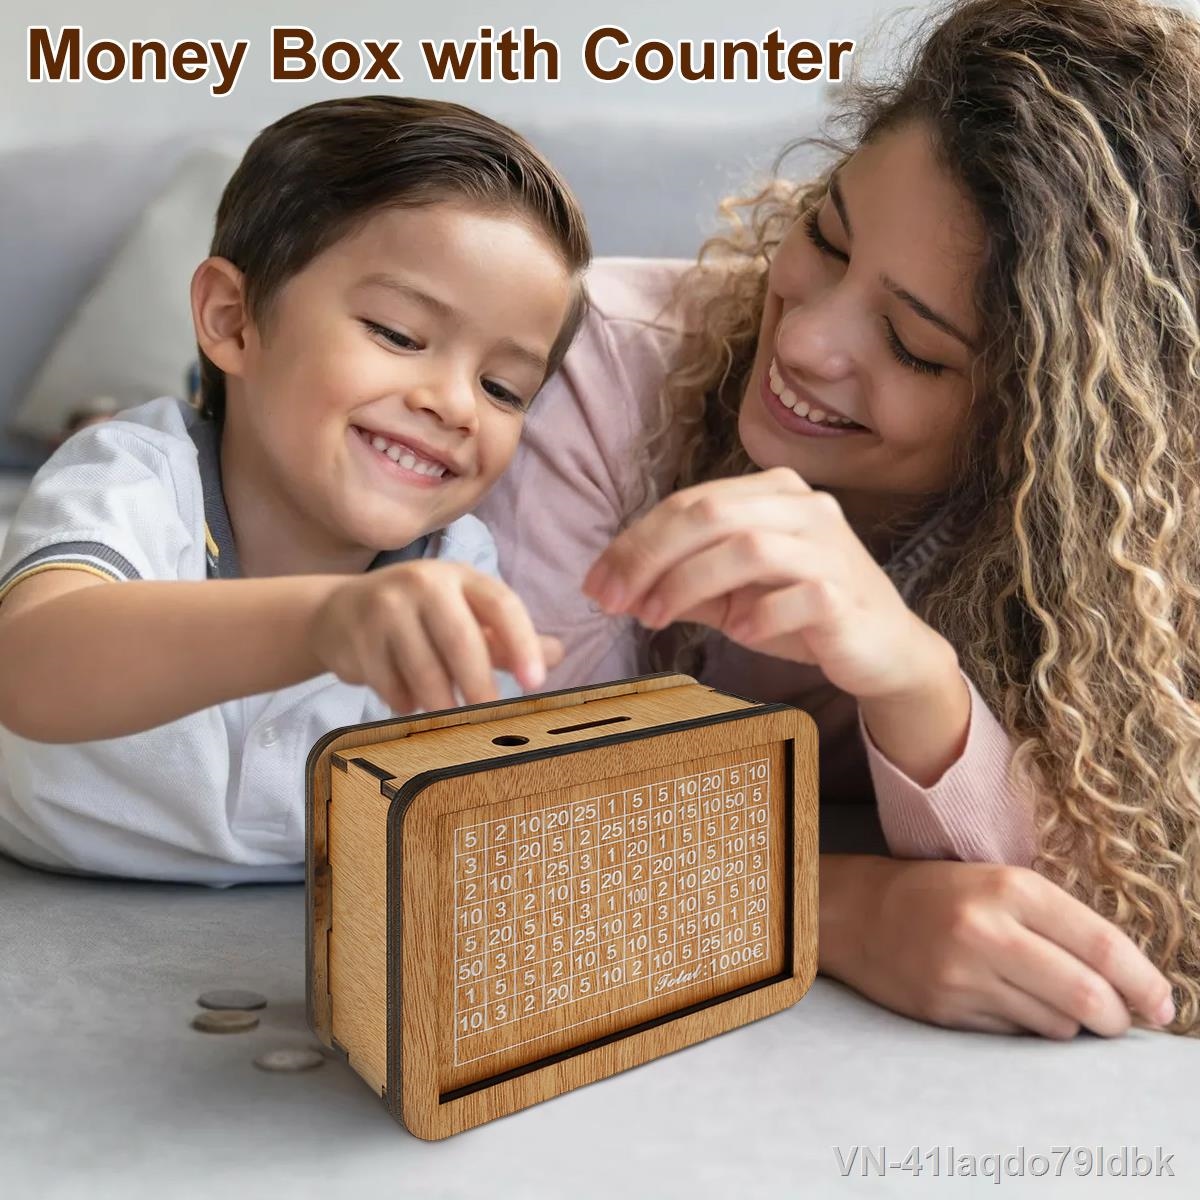 ♚▧✶ 41Iaqdo79ldbk Caixa de dinheiro madeira múltiplos propósitos para adultos caixa criativa com mesa número